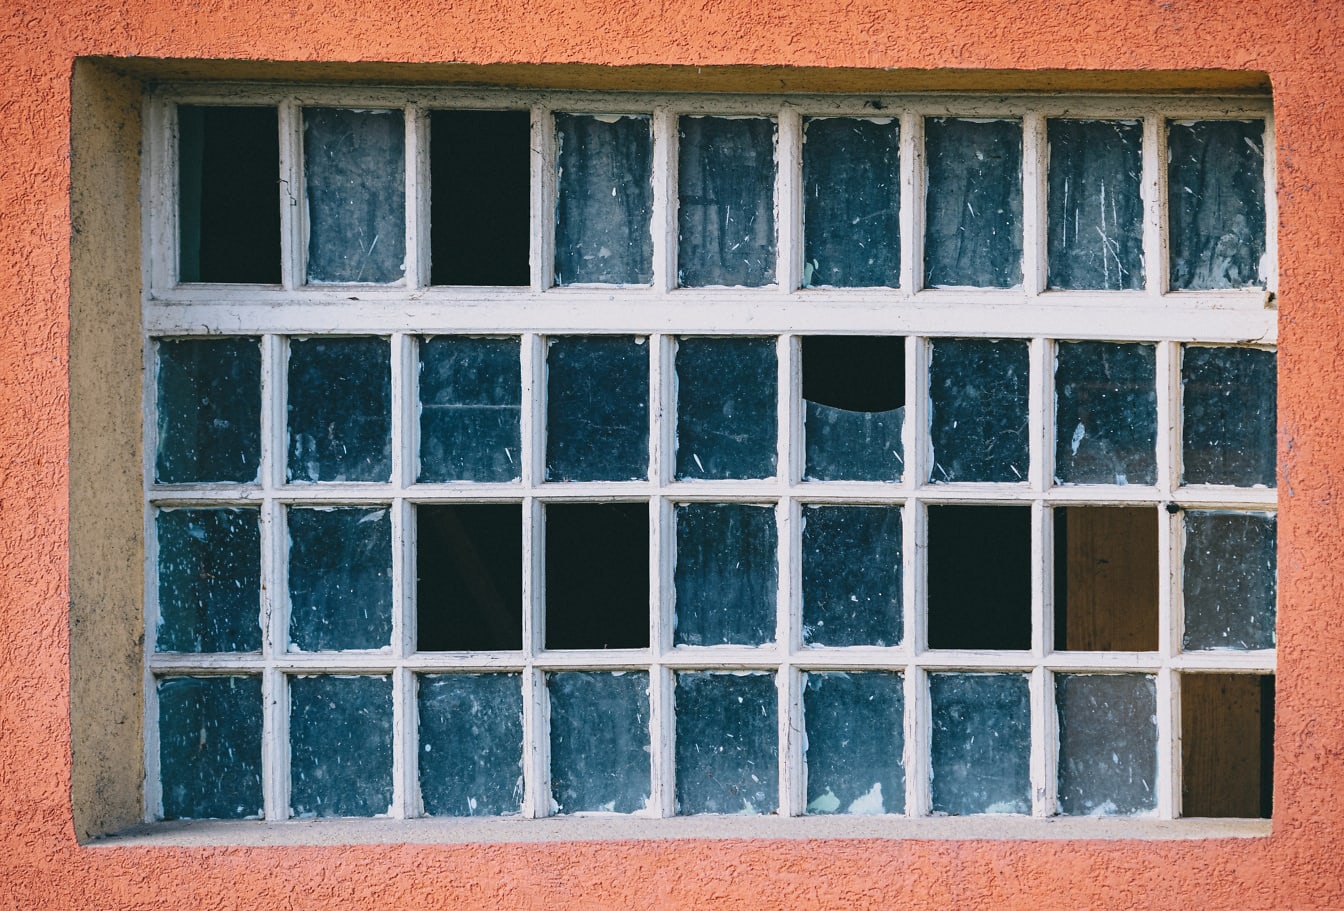 Staré okno s mnoha malými rámečky a rozbitým sklem